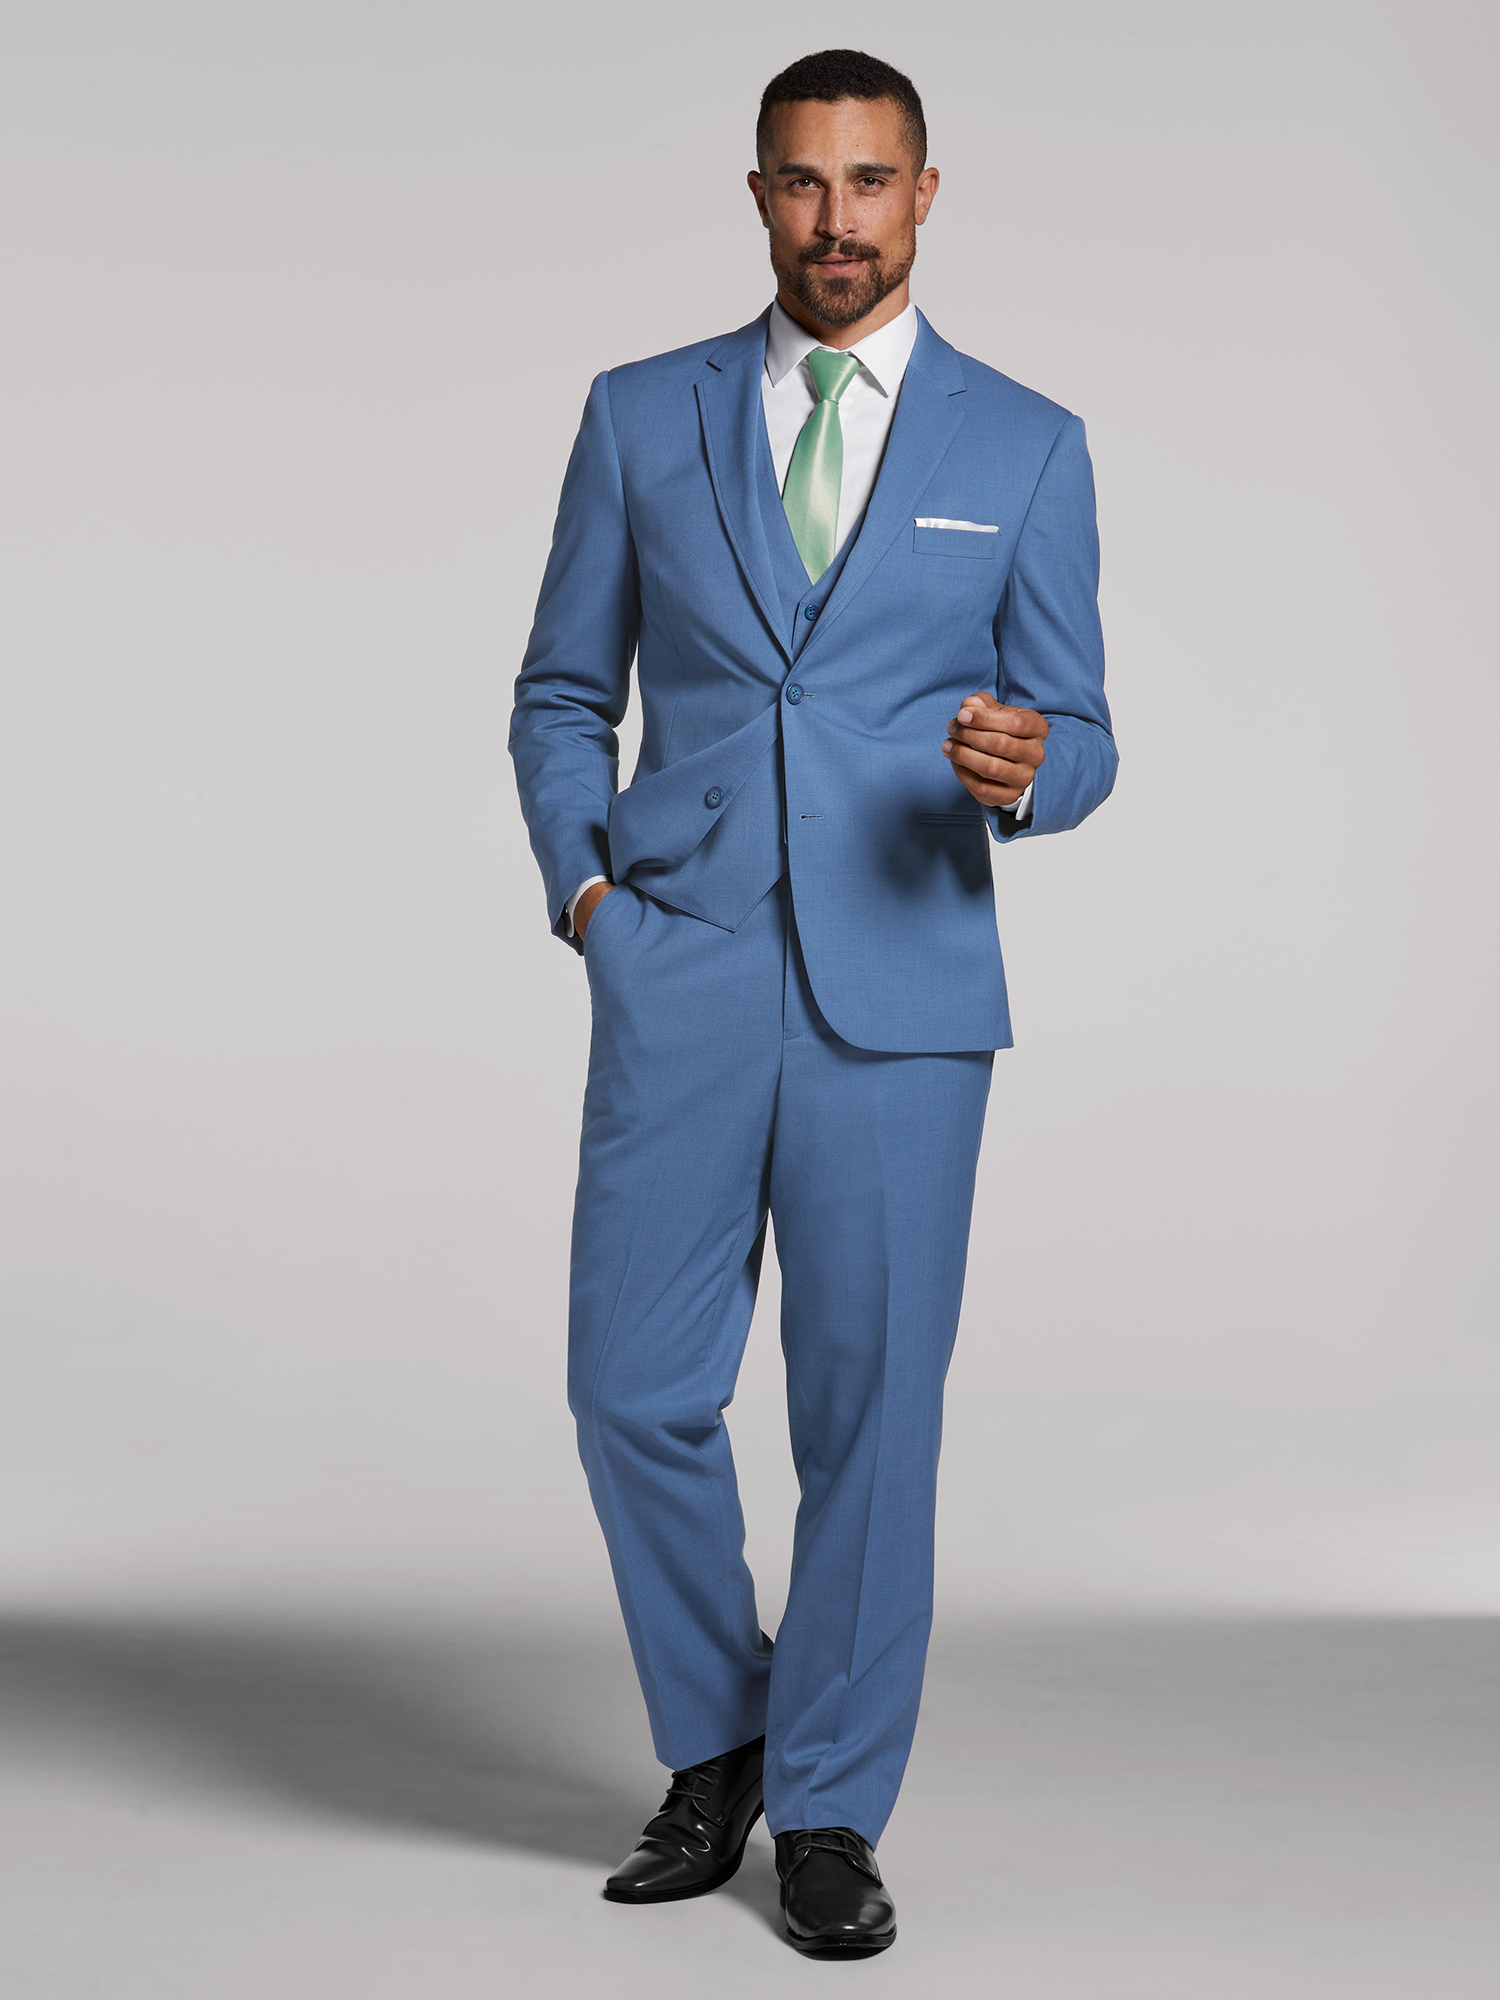 Blue Performance Wedding Suit by Calvin Klein | Suit Rental | Men's ...